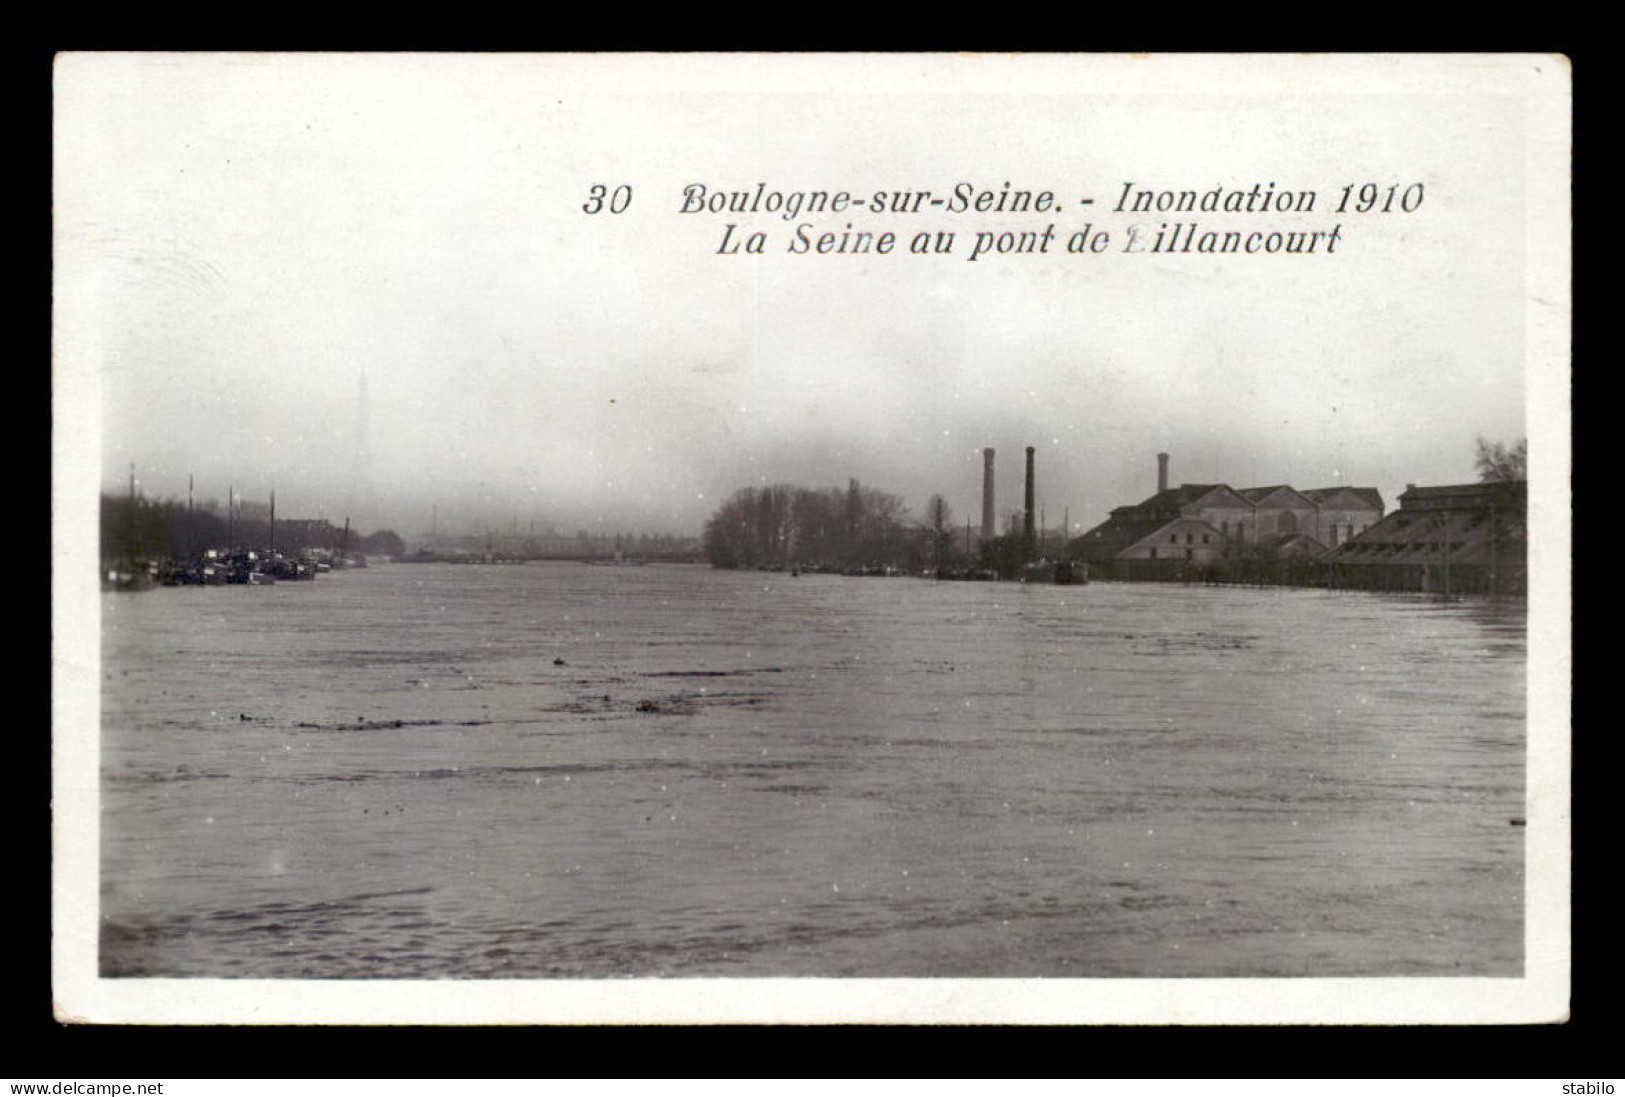 92 - BOULOGNE-SUR-SEINE - INONDATIONS DE 1910 - LA SEINE AU PONT DE BILLANCOURT - EDITEUR MARQUE ROSE - Boulogne Billancourt